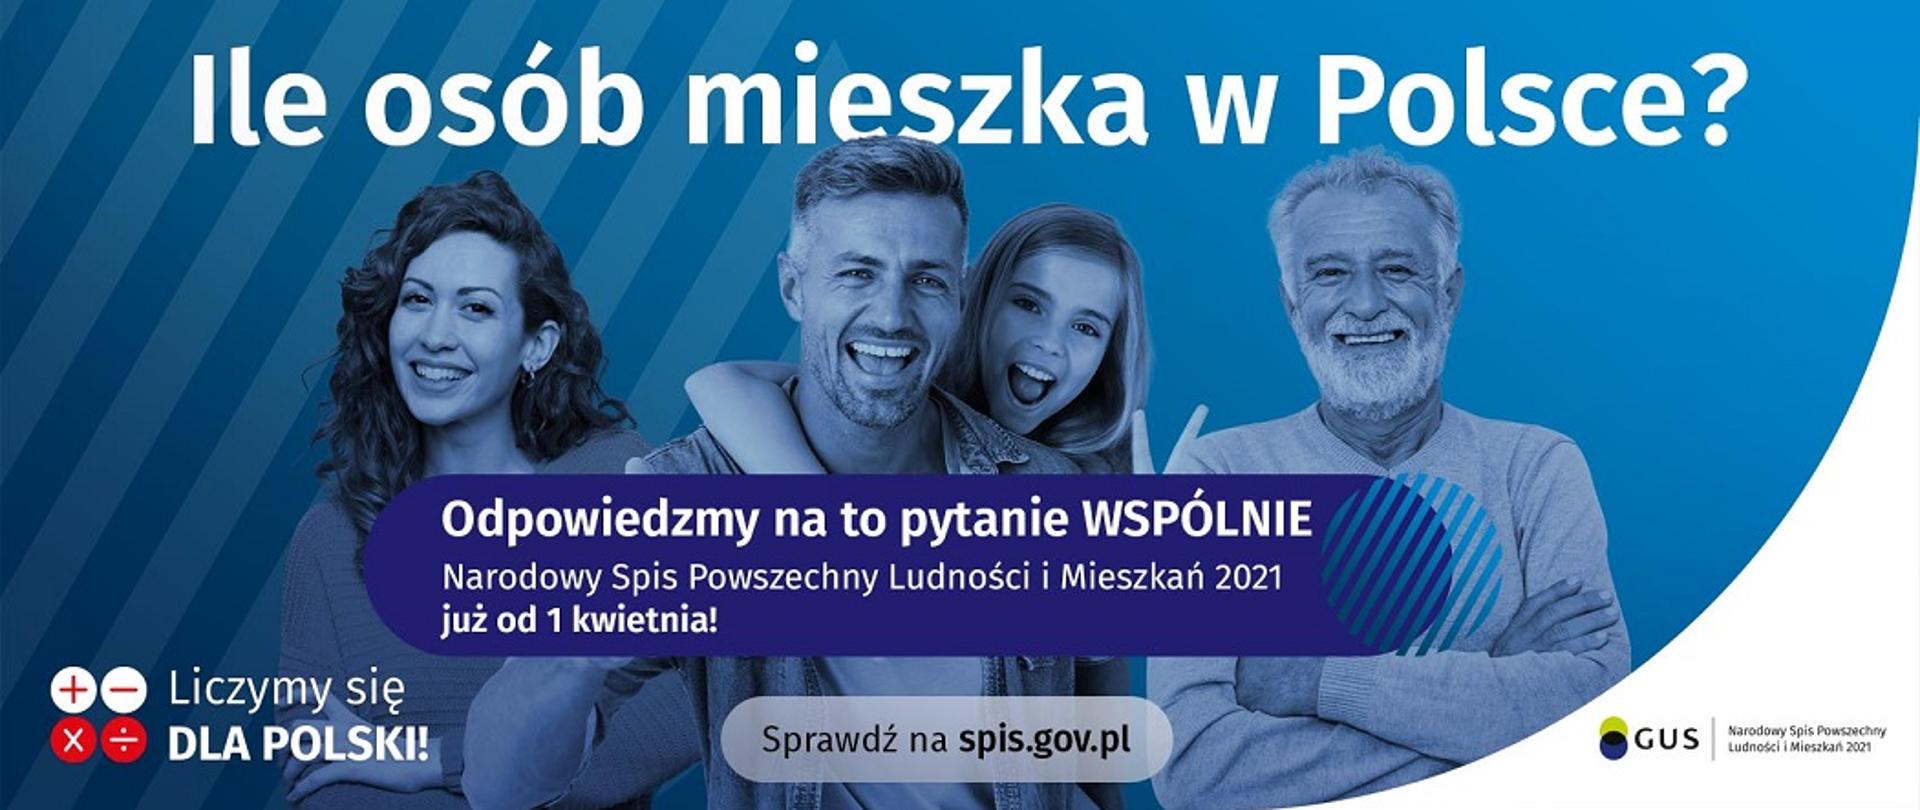 Banner informacyjny o Narodowym Spisie Powszechnym, osoby na niebieskim tle, napis "wejdź na spis.gov.pl i spisz się! Spis trwa od 1 kwietnia", do wykorzystania na profilu Facebook